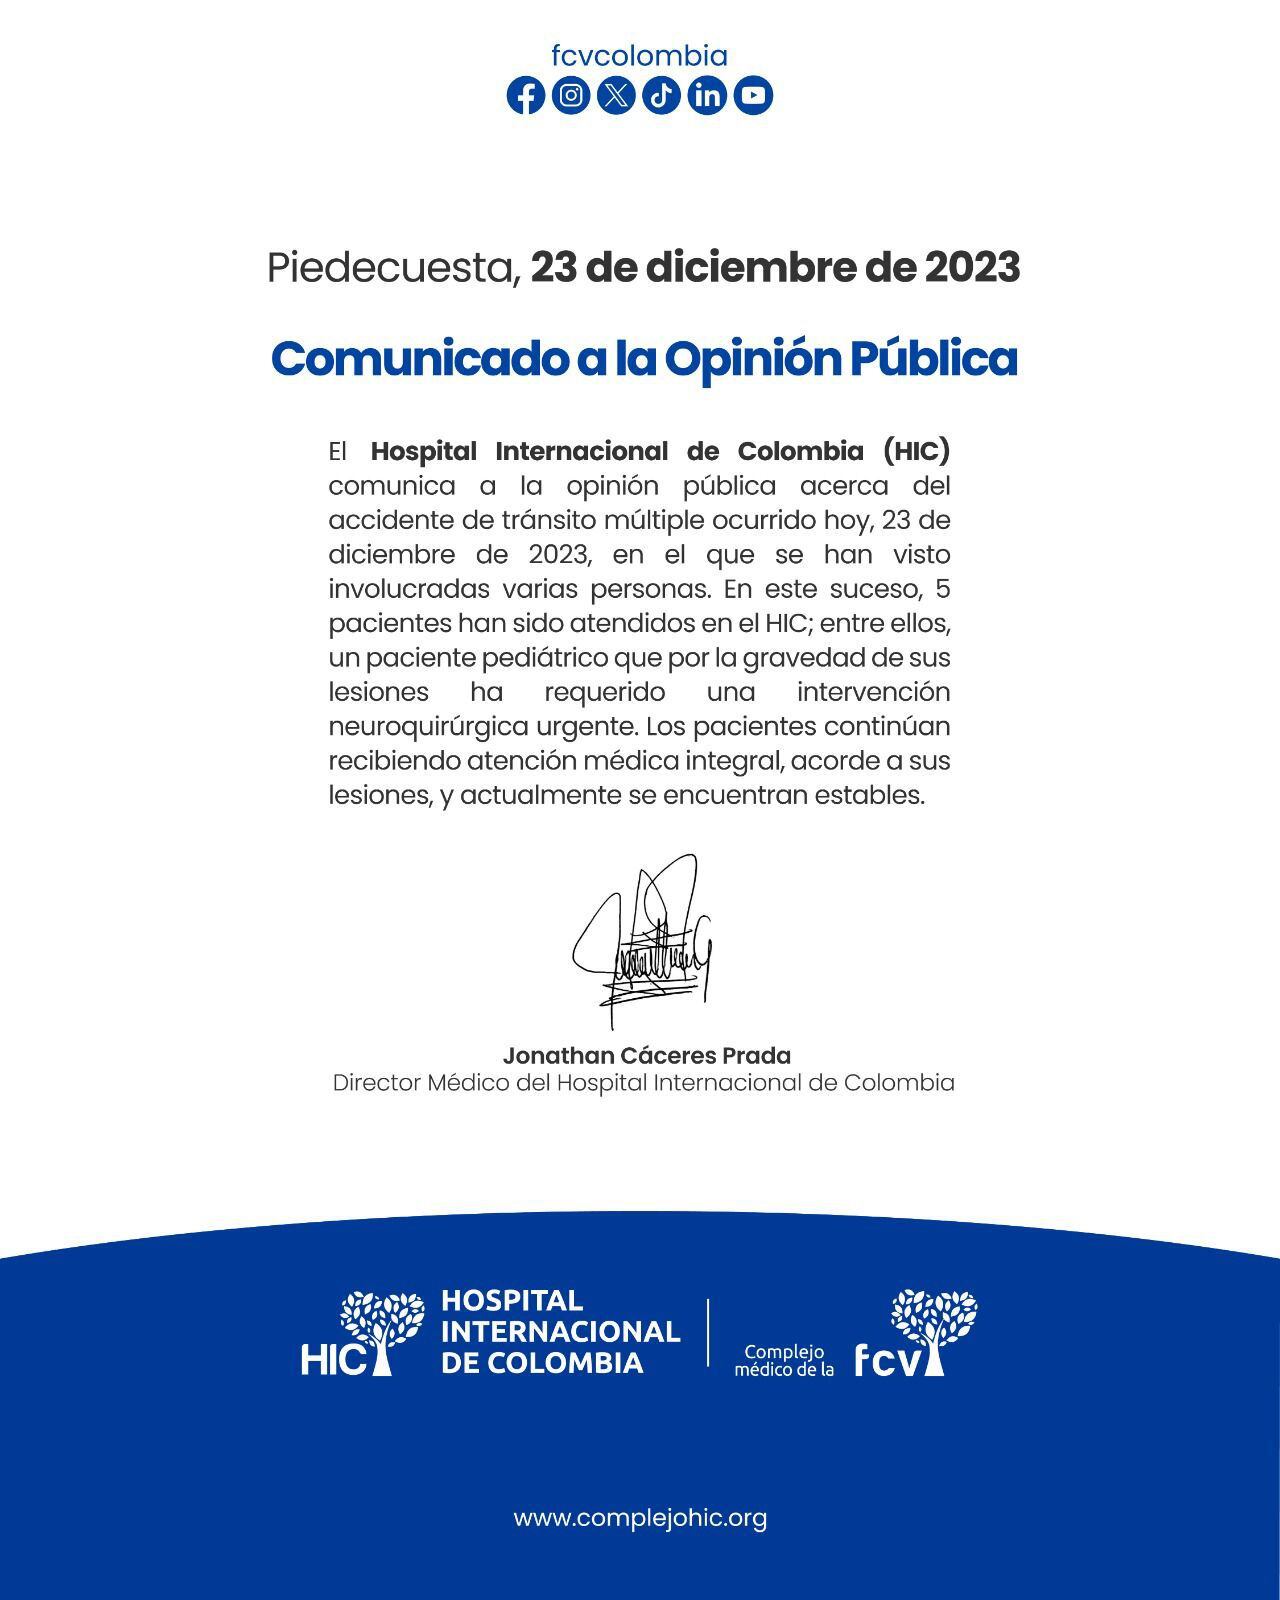 Comunicado del Hospital Internacional de Colombia.